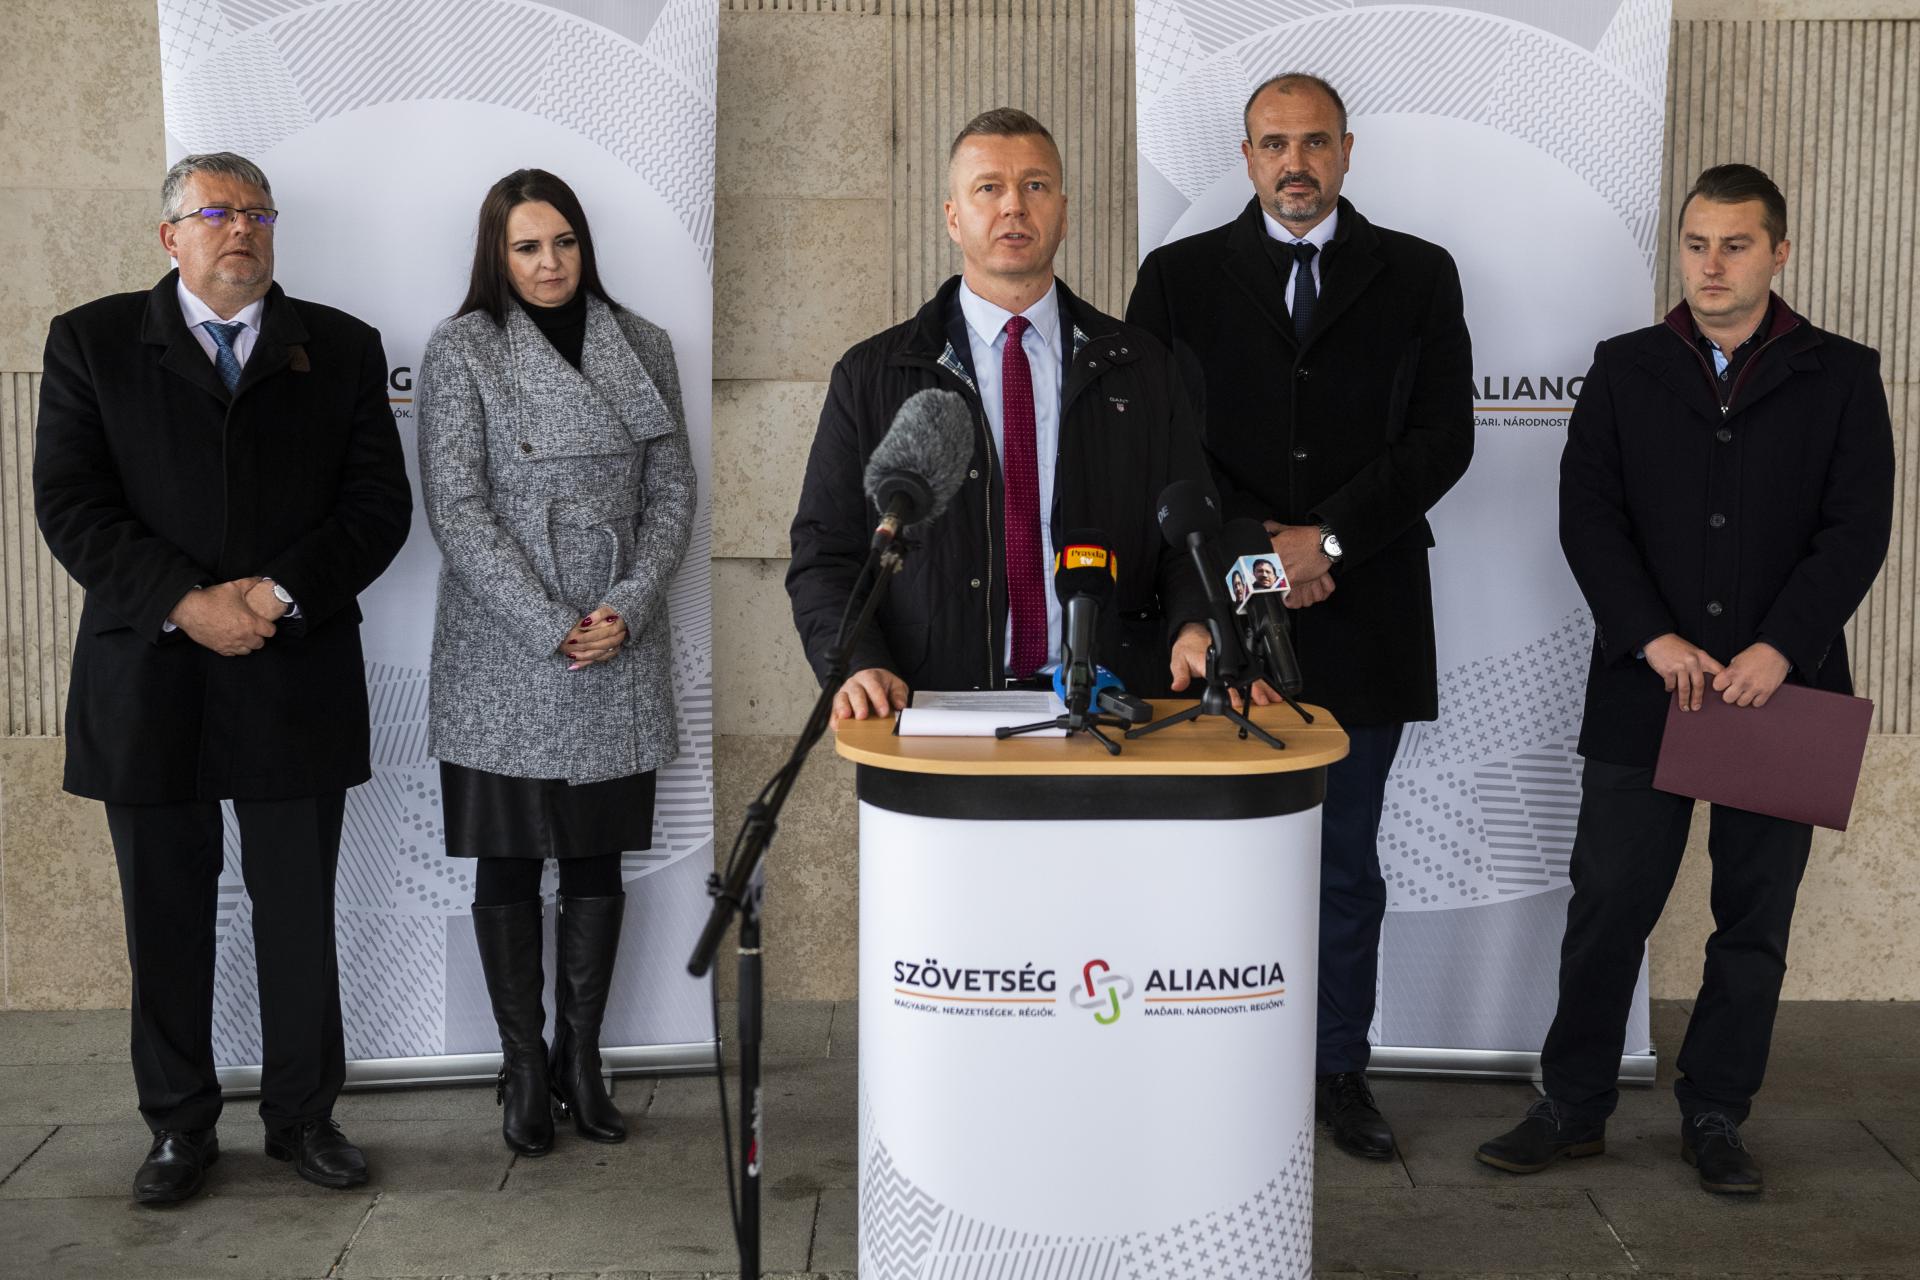 Mimoparlamentná maďarská strana Aliancia považuje voľby za úspešné, má vyše 200 starostov